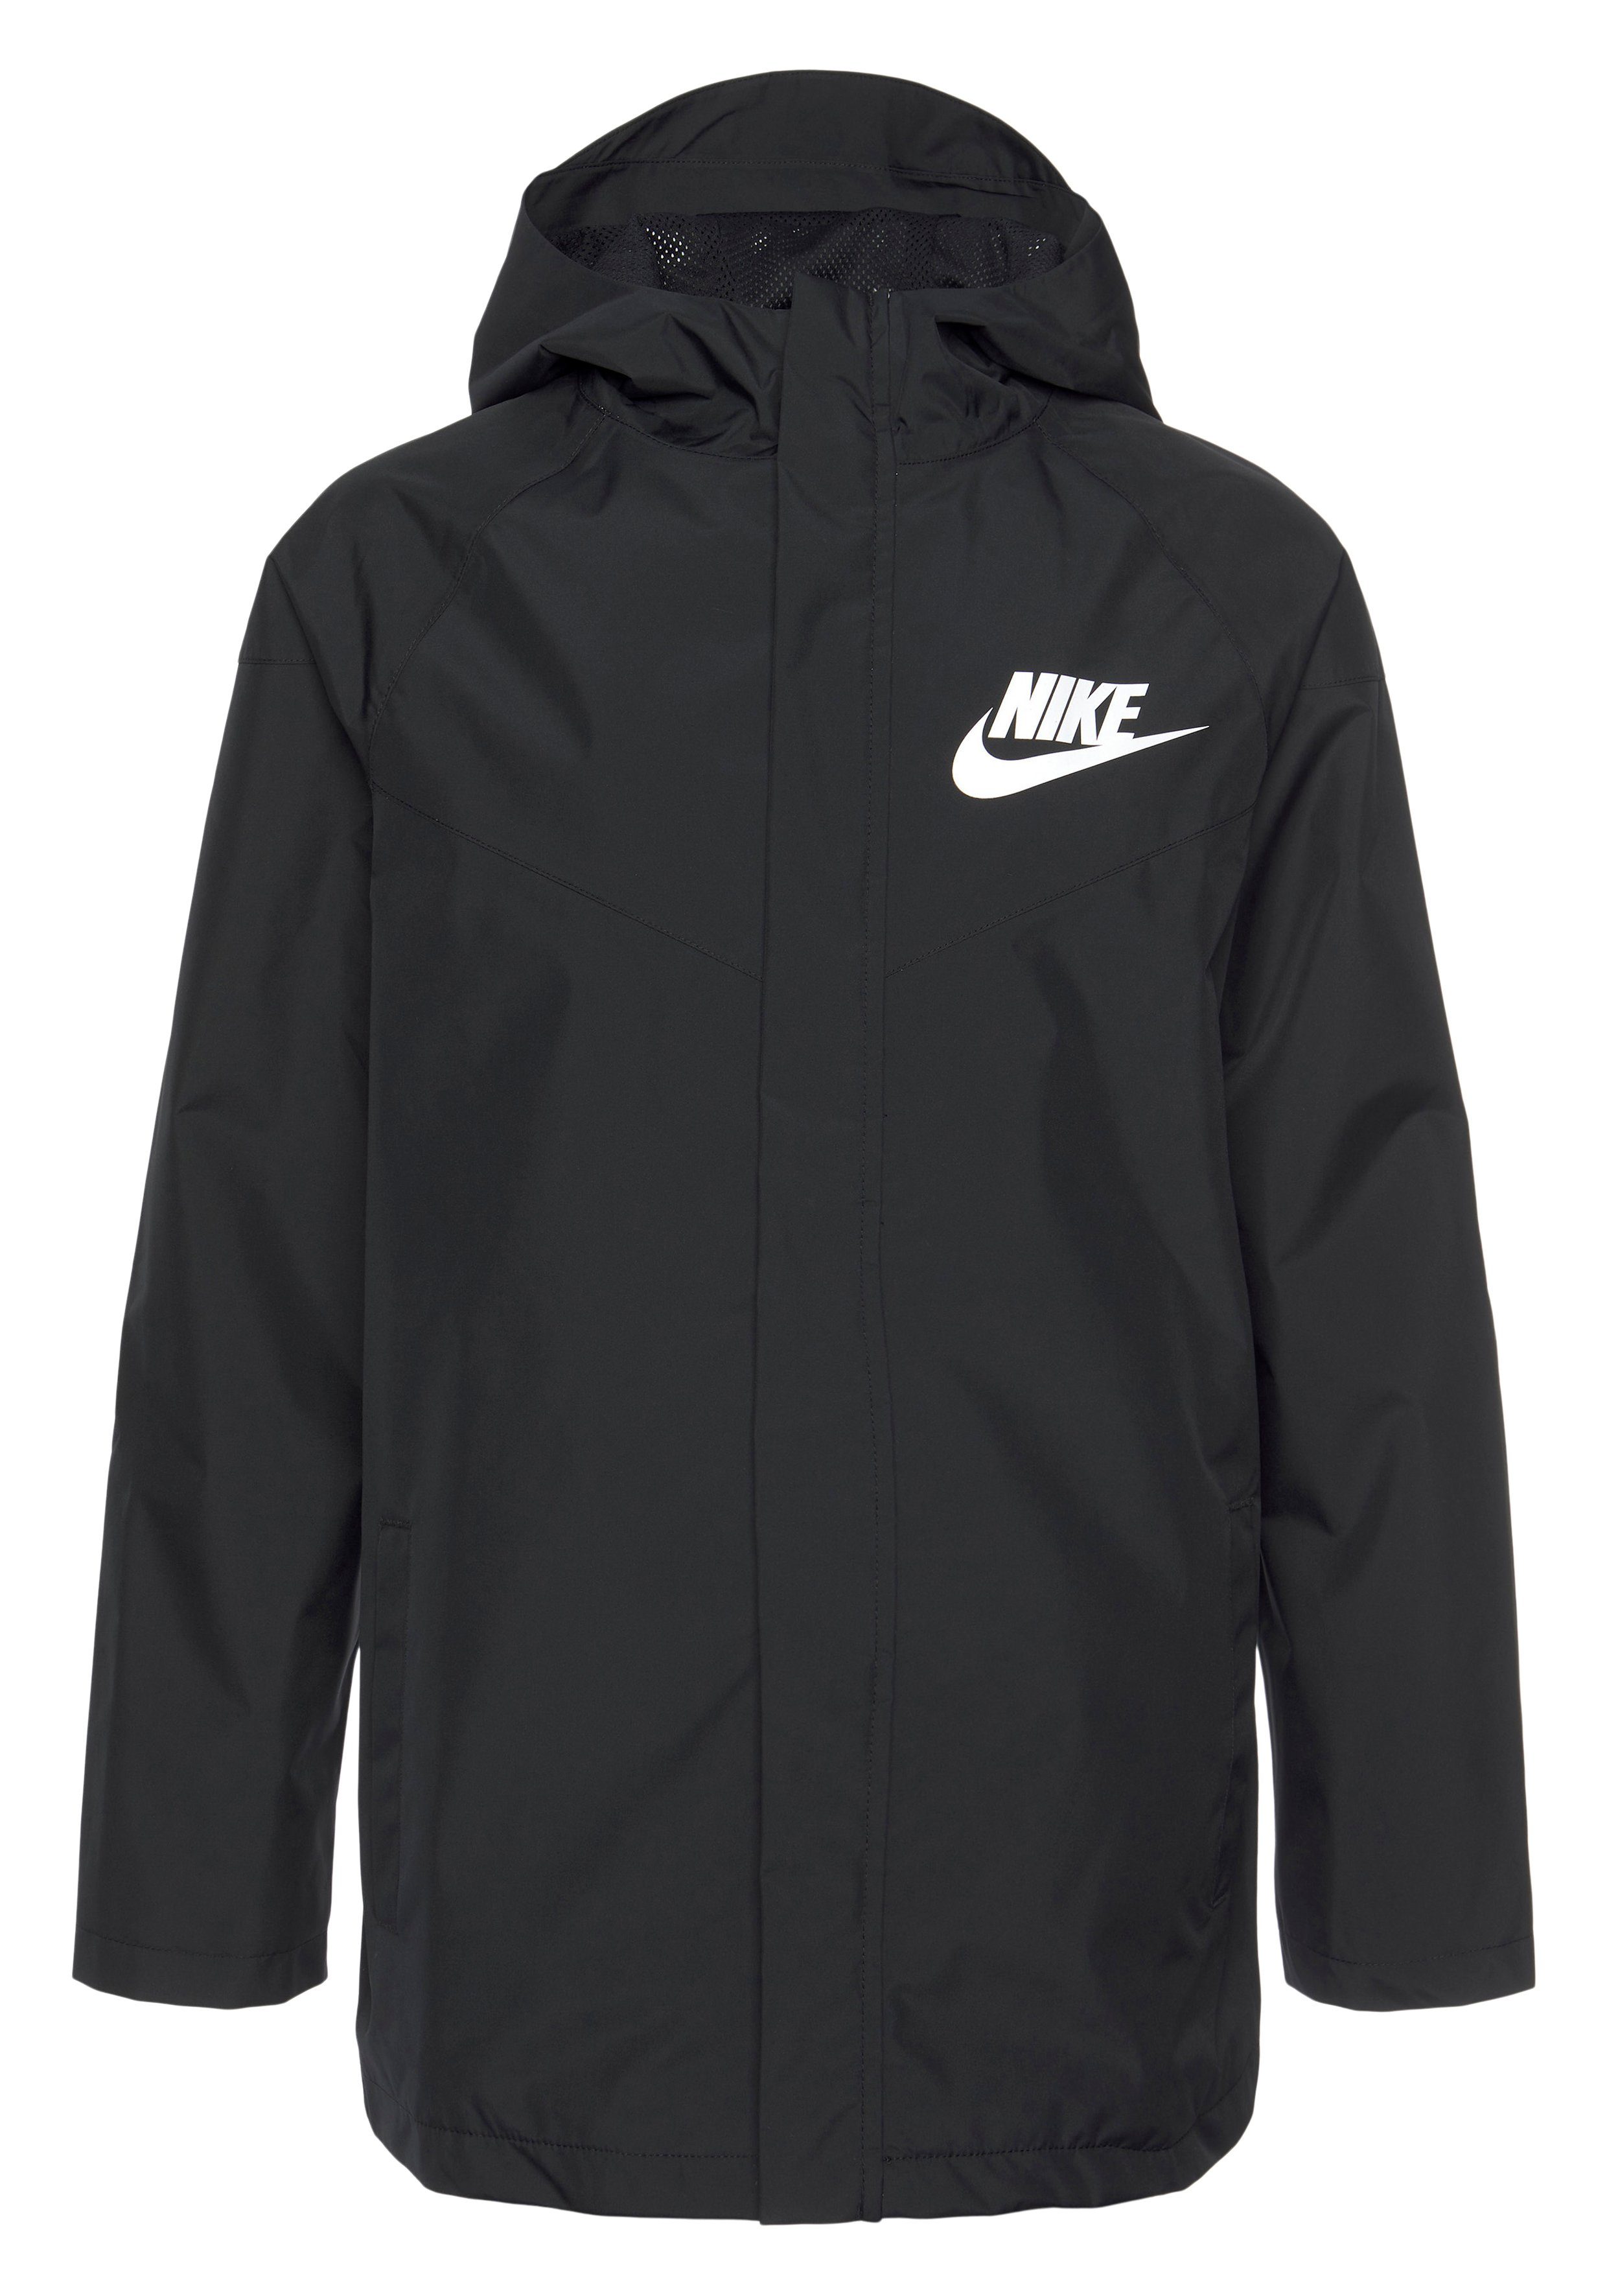 Jacket Nike Windbreaker Kids' Sportswear BLACK/BLACK/WHITE Big (Boys) Windrunner Storm-FIT